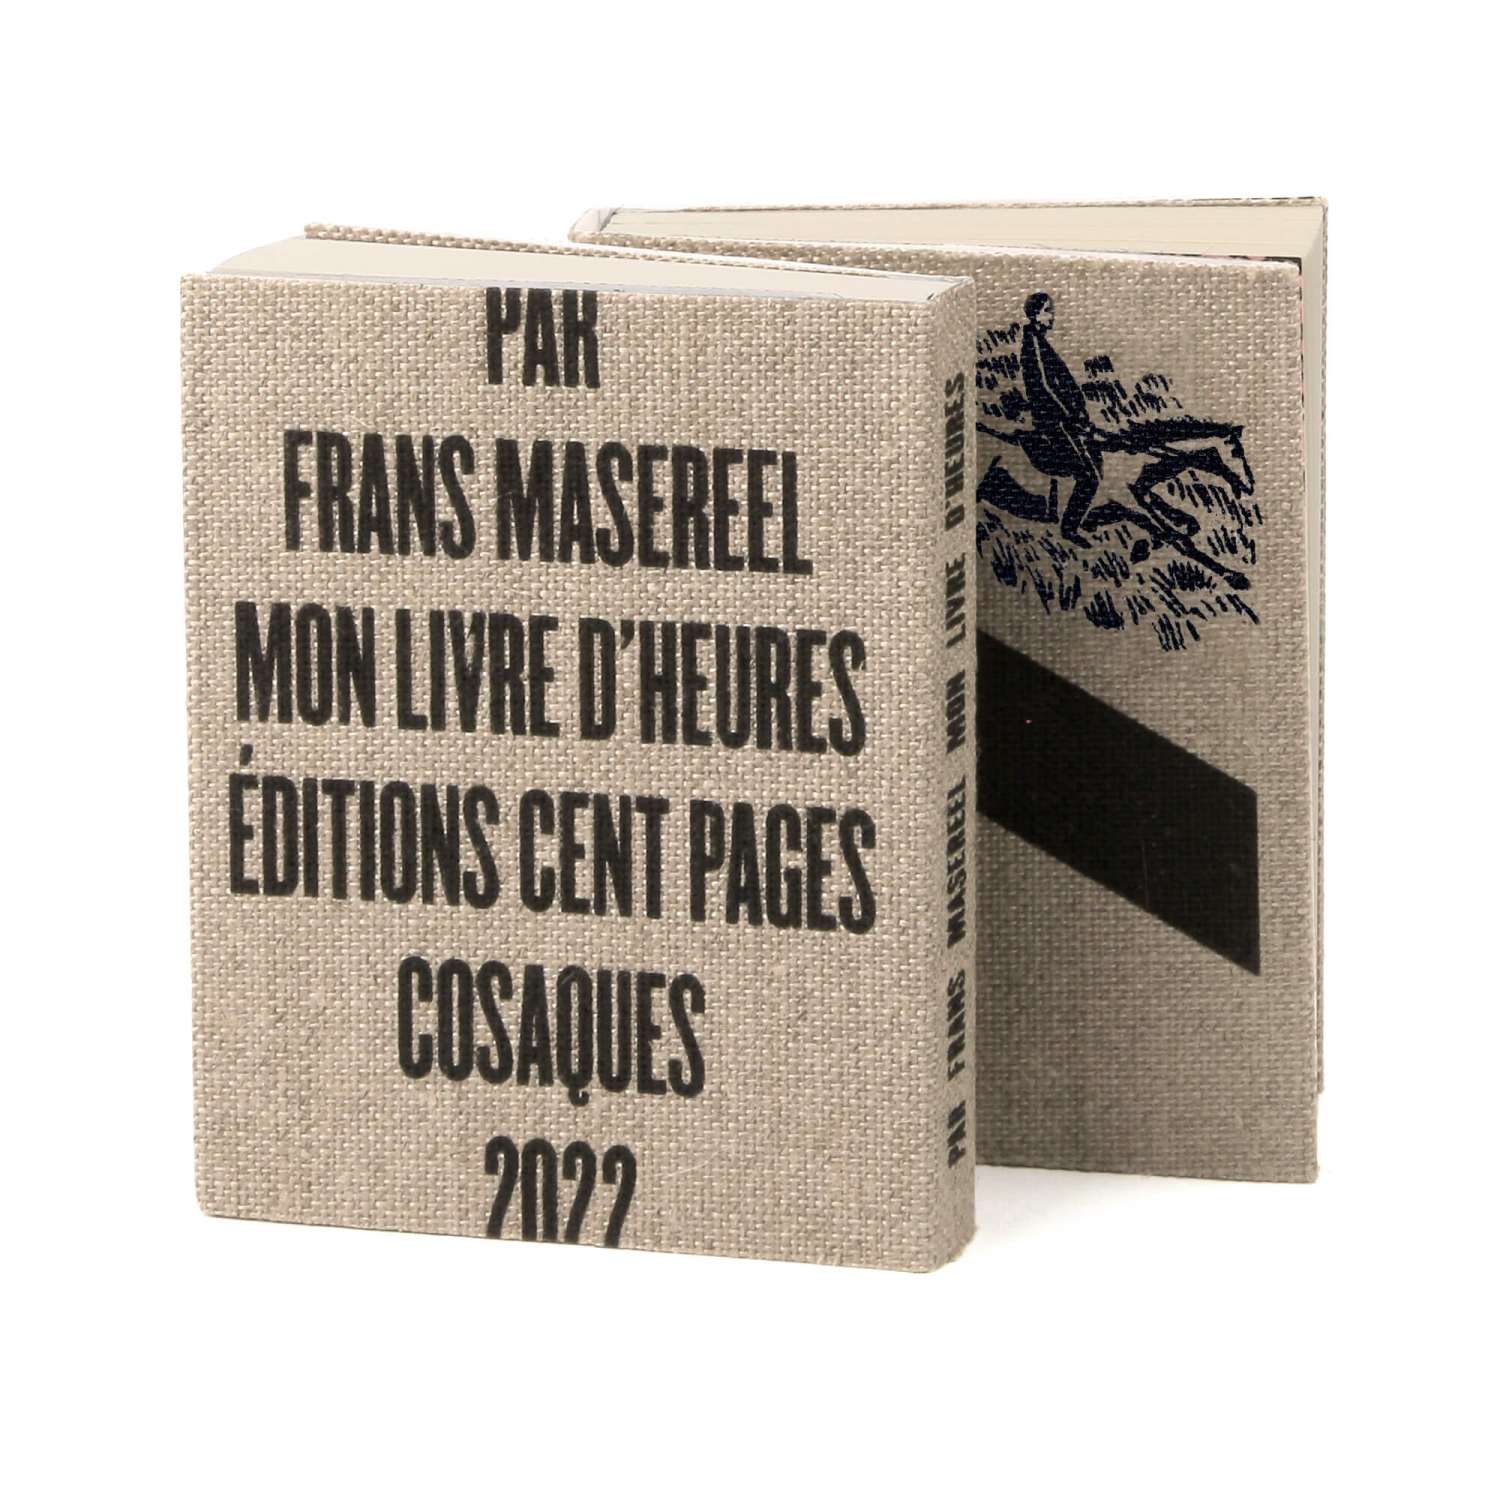 Frans Masereel Mon livre d'heures Éditions cent pages livre objet page intérieure bois gravé